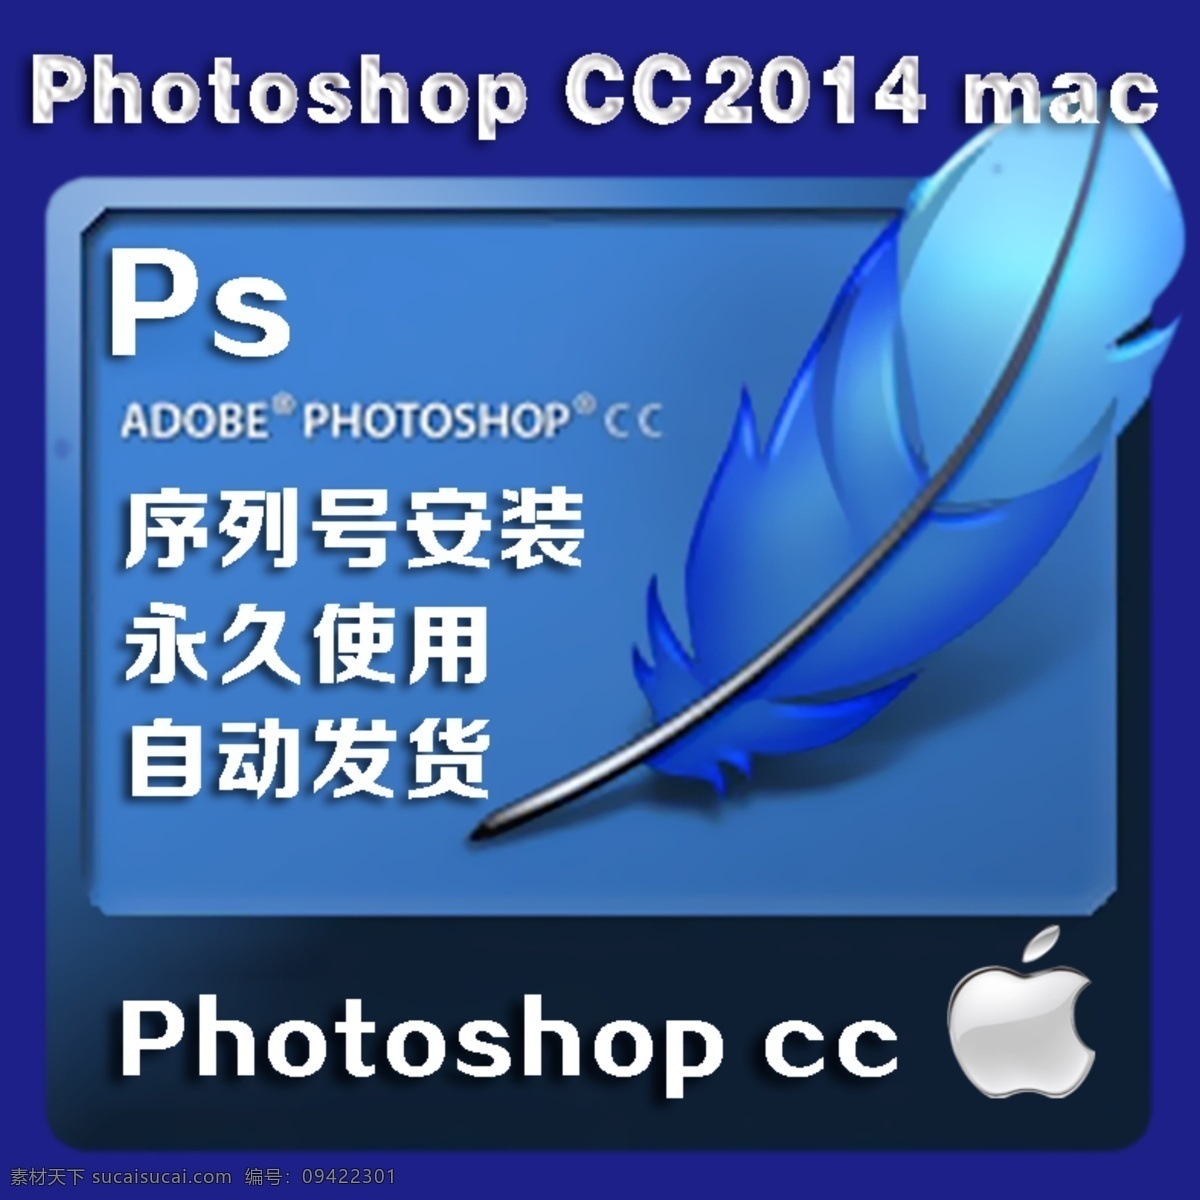 淘宝 ps 软件 图 2014 cc mac photoshop ps图标 蓝色 苹果 羽毛 序列号安装 永久使用 自动发货 原创设计 原创淘宝设计